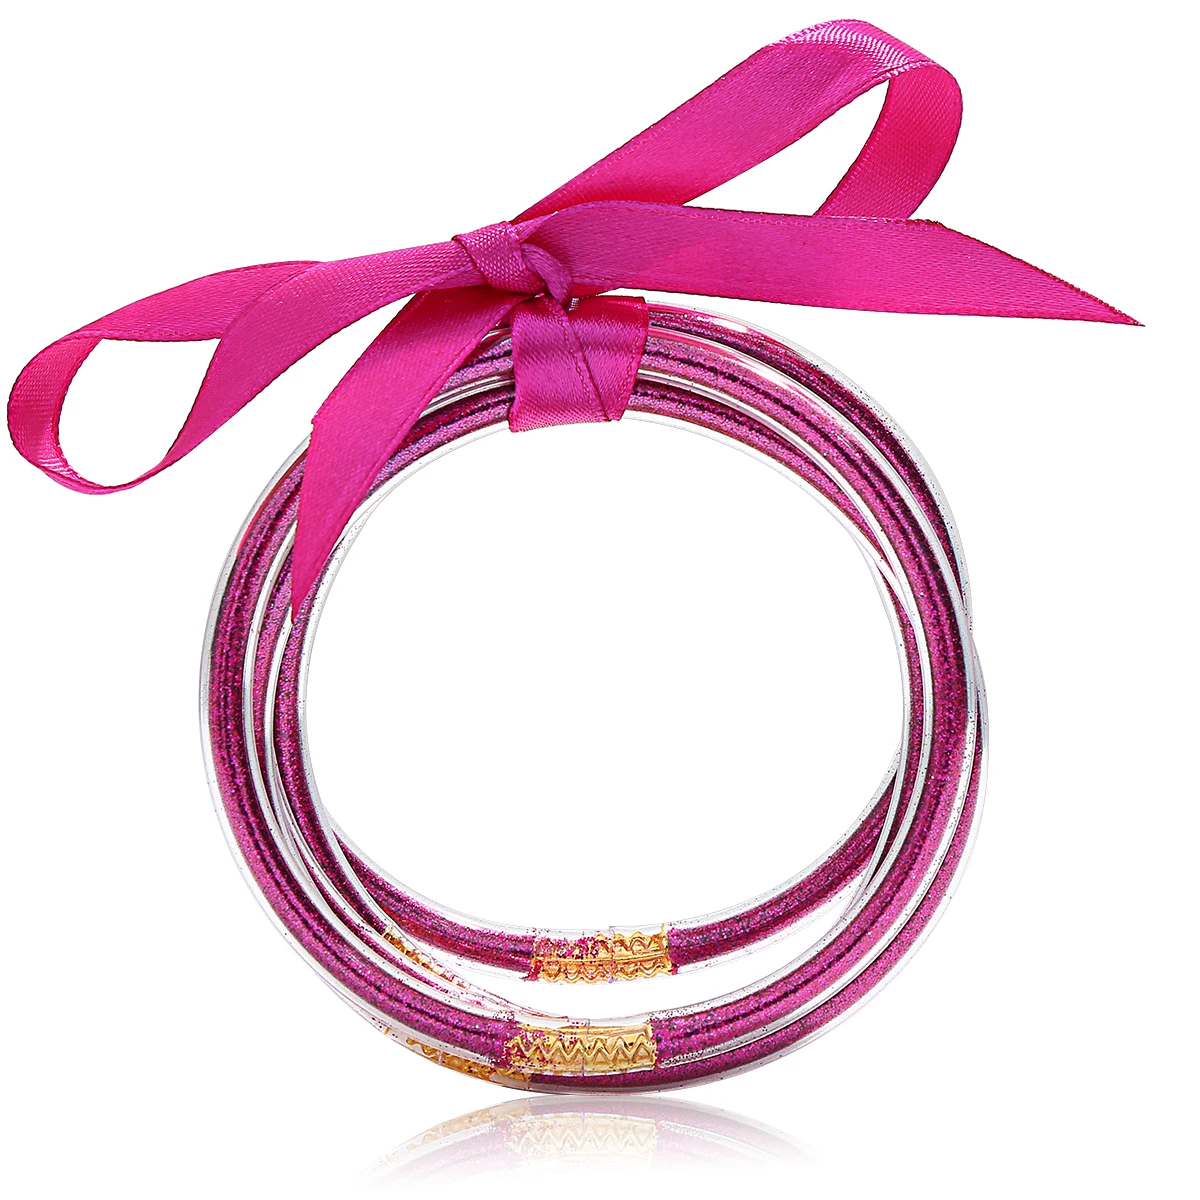 5 шт. блестящие желейные браслеты многоцветные силиконовые браслеты набор лент бант пудра декор Мода Дружба круг браслеты